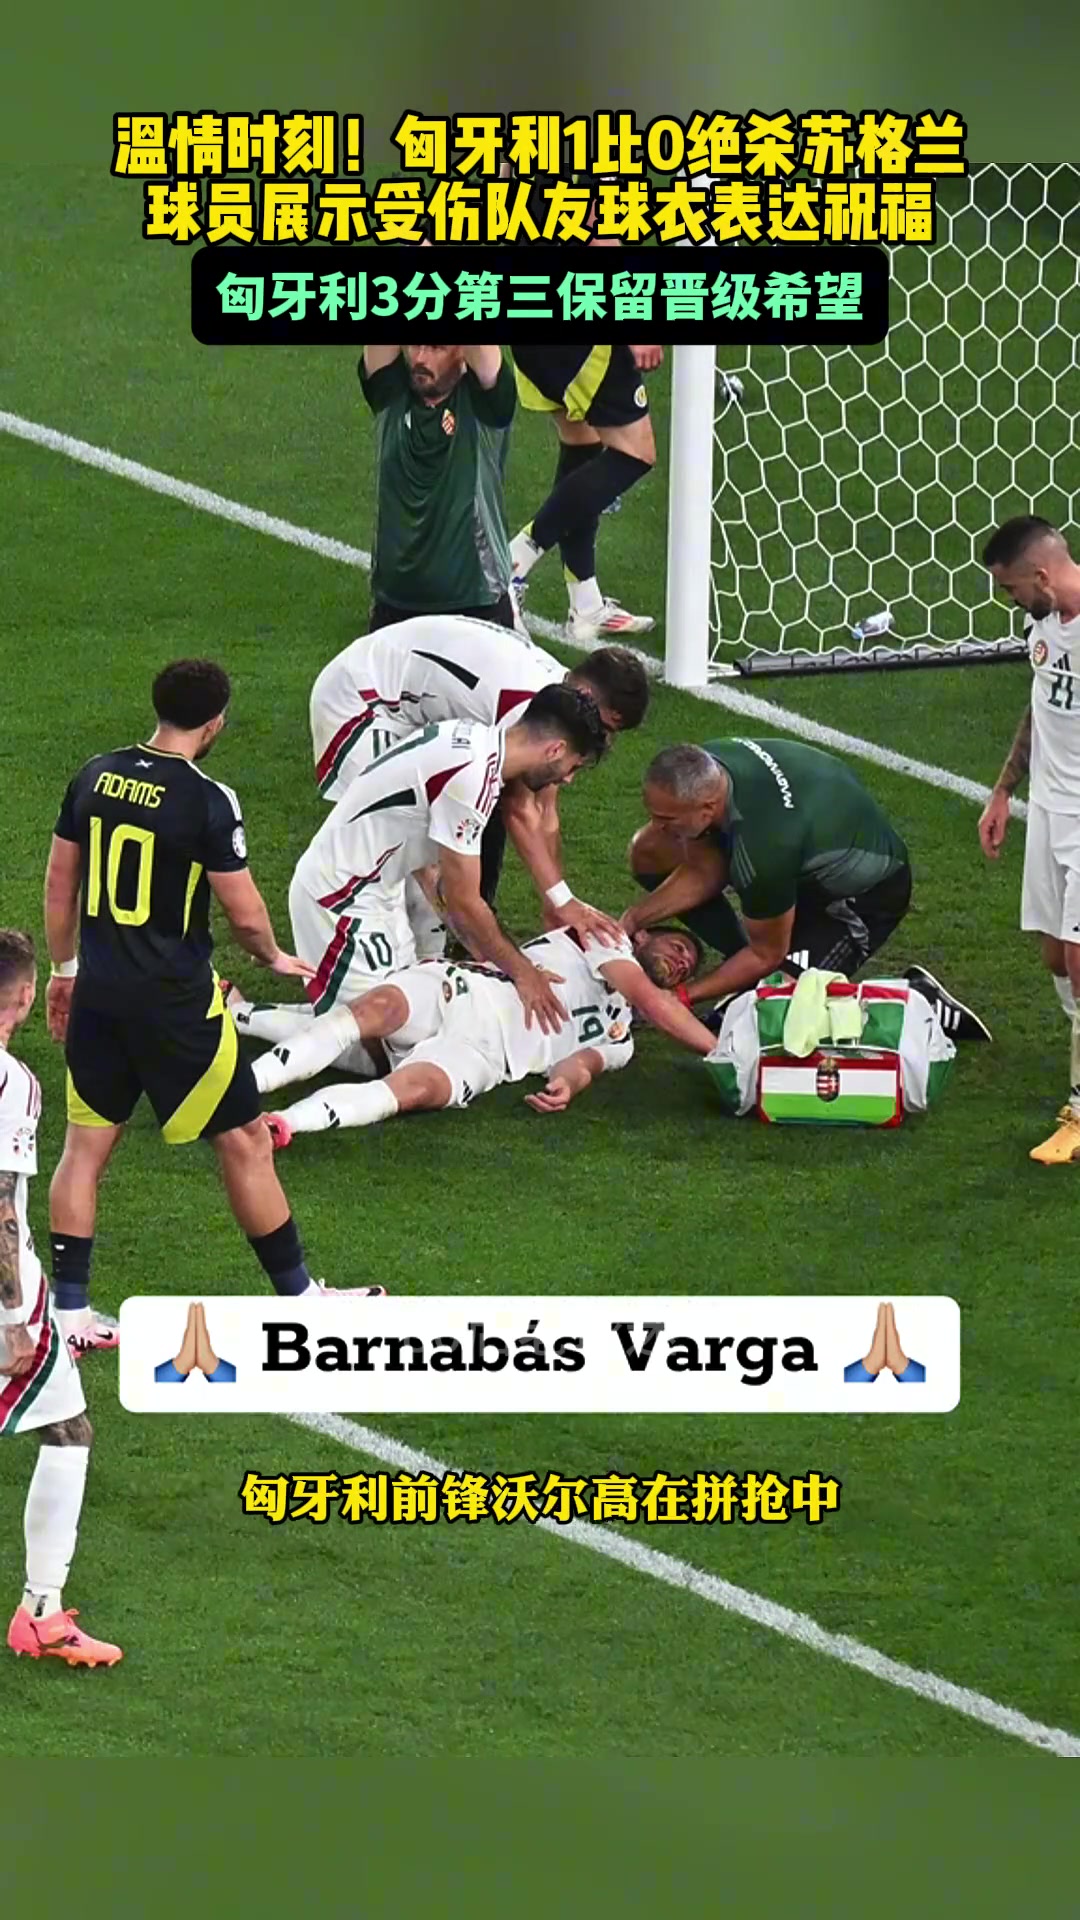 温情时刻!匈牙利赛后 球员展示受伤队友球衣表达祝福